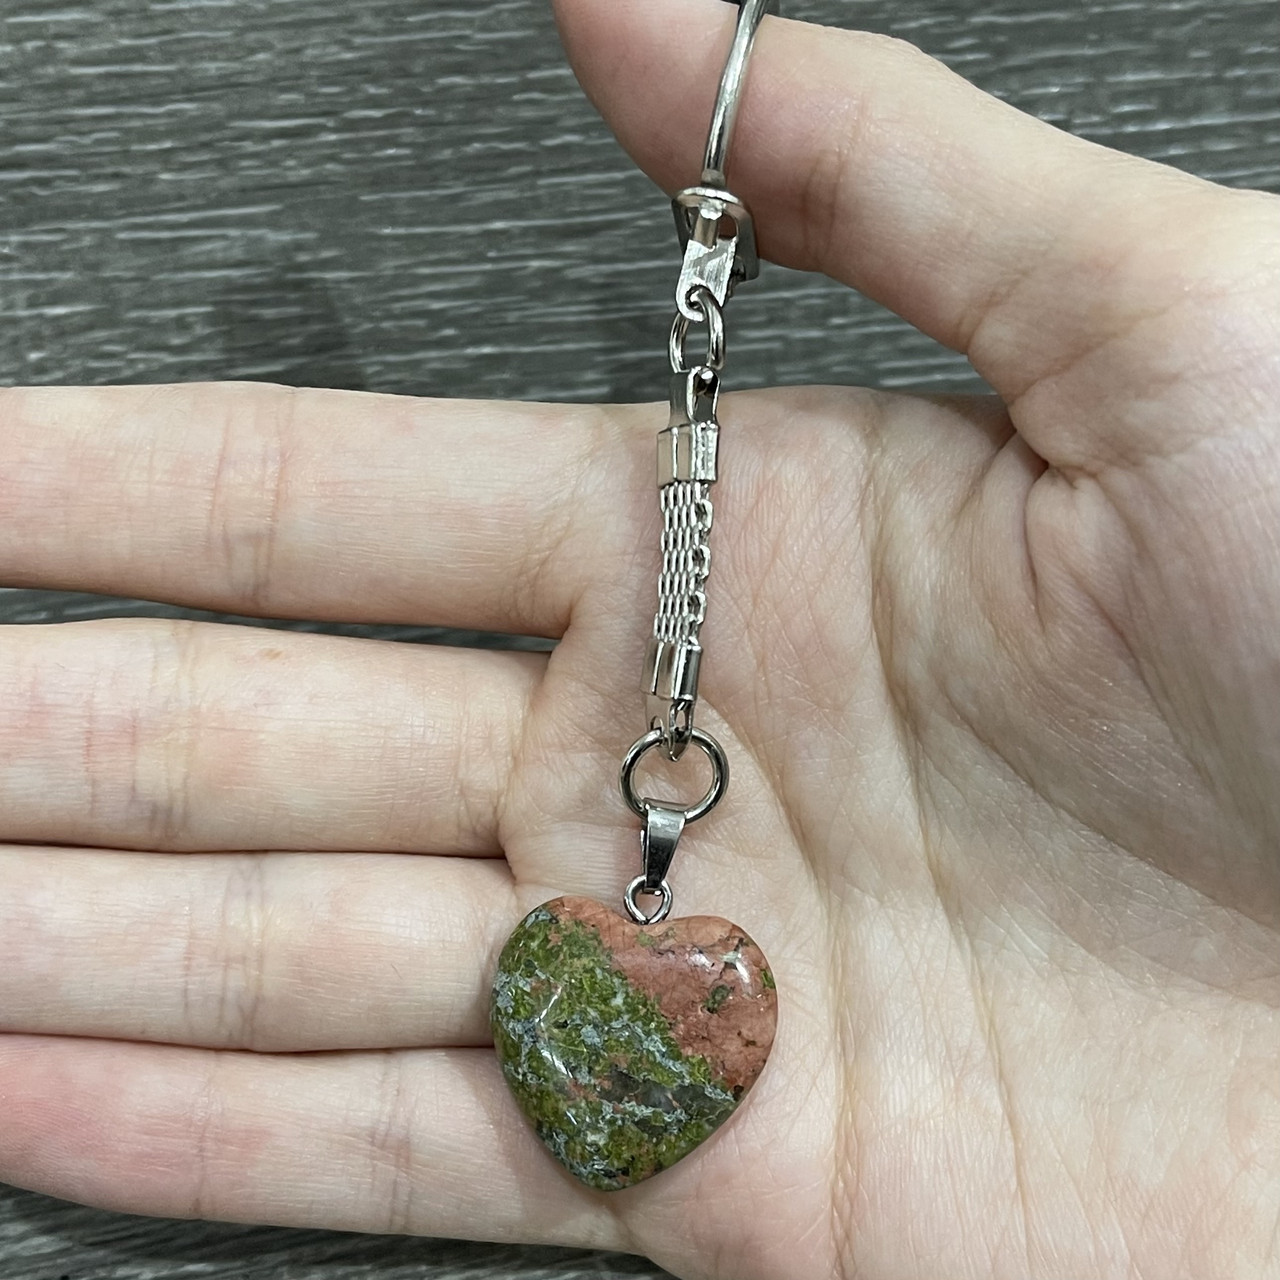 Натуральний камінь Яшма кулон у формі сердечка на брелоку для ключів - оригінальний подарунок коханій дівчині